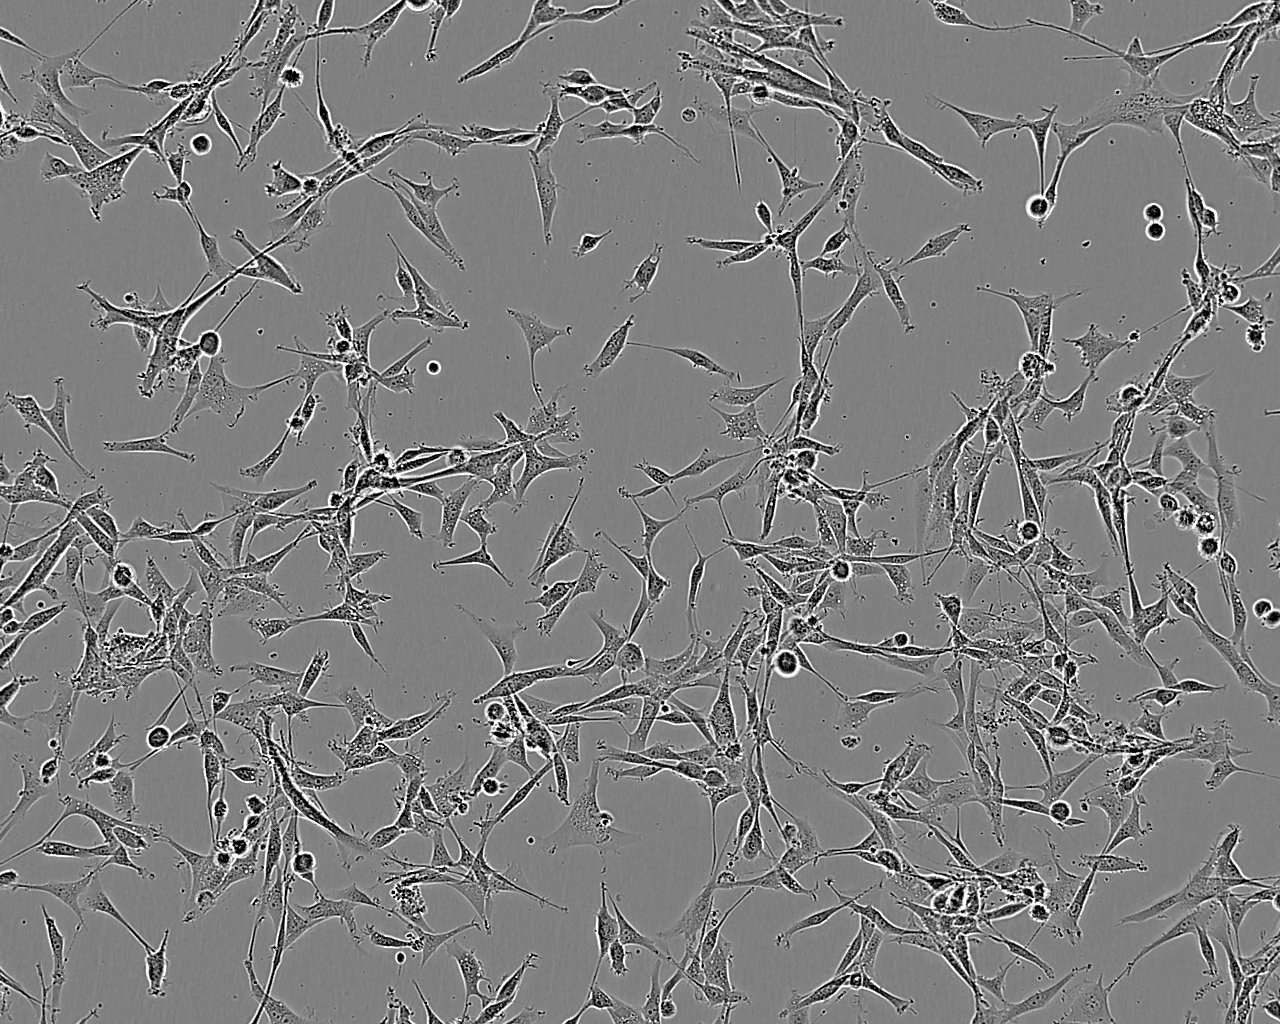 ID8 epithelioid cells小鼠卵巢癌细胞系